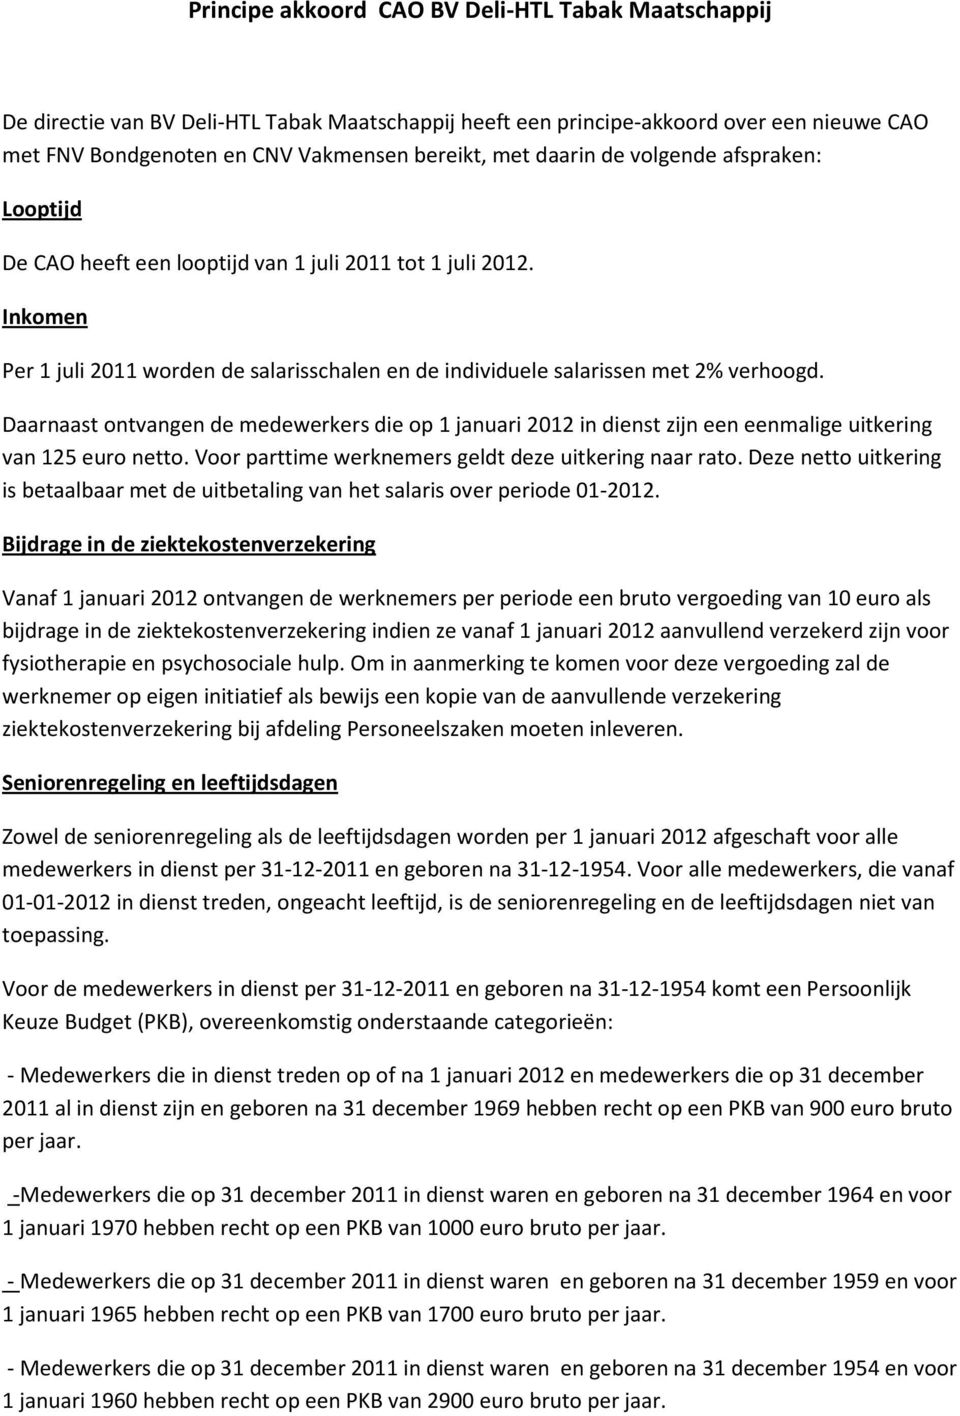 Daarnaast ontvangen de medewerkers die op 1 januari 2012 in dienst zijn een eenmalige uitkering van 125 euro netto. Voor parttime werknemers geldt deze uitkering naar rato.